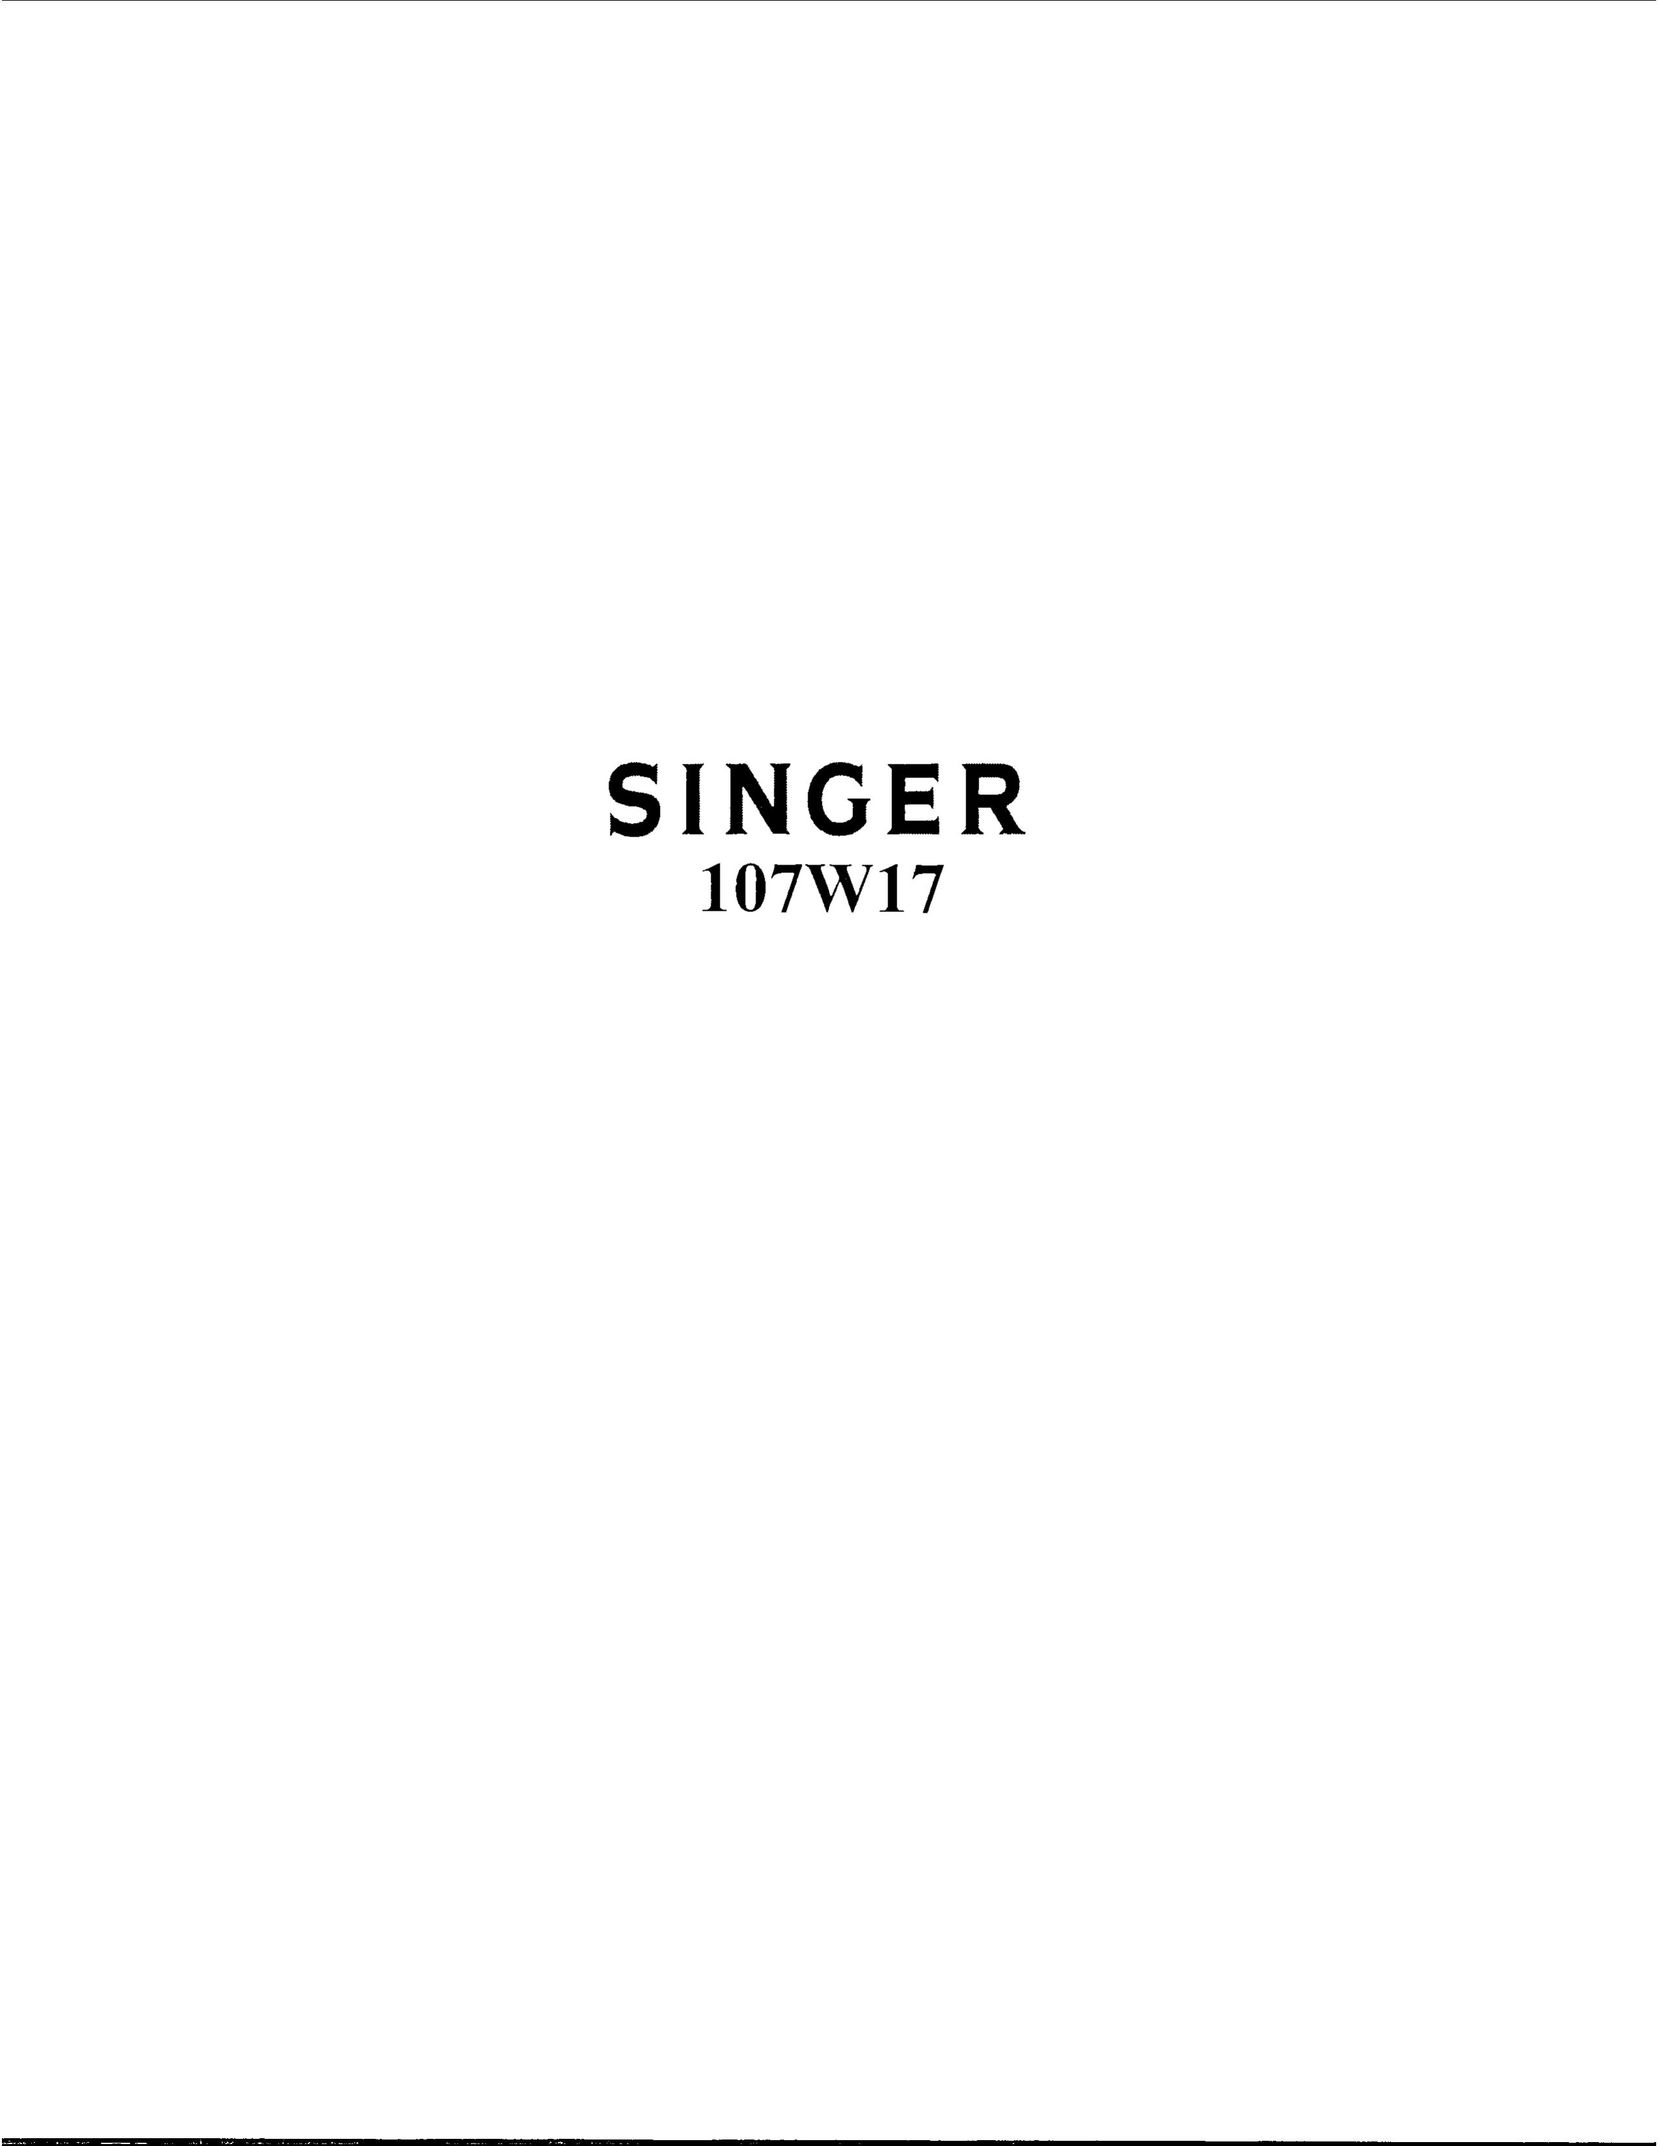 Singer 107W17 Sewing Machine User Manual